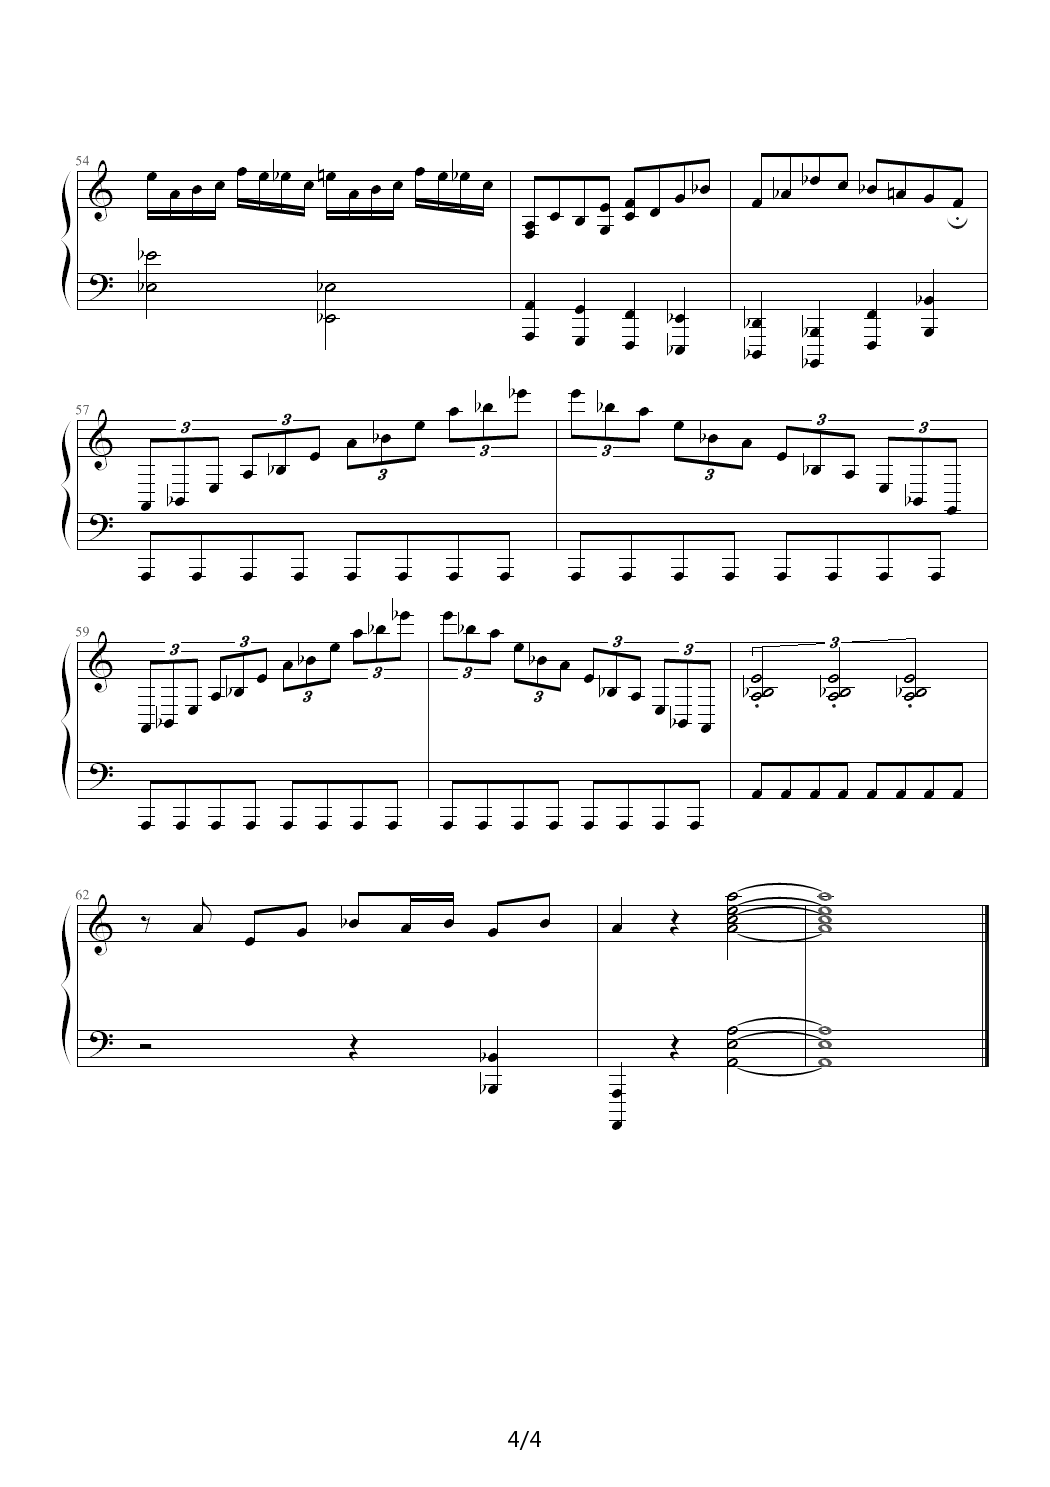 THE FIERCE BATTLE钢琴谱|THE FIERCE BATTLE最新钢琴谱|THE FIERCE BATTLE钢琴谱下载